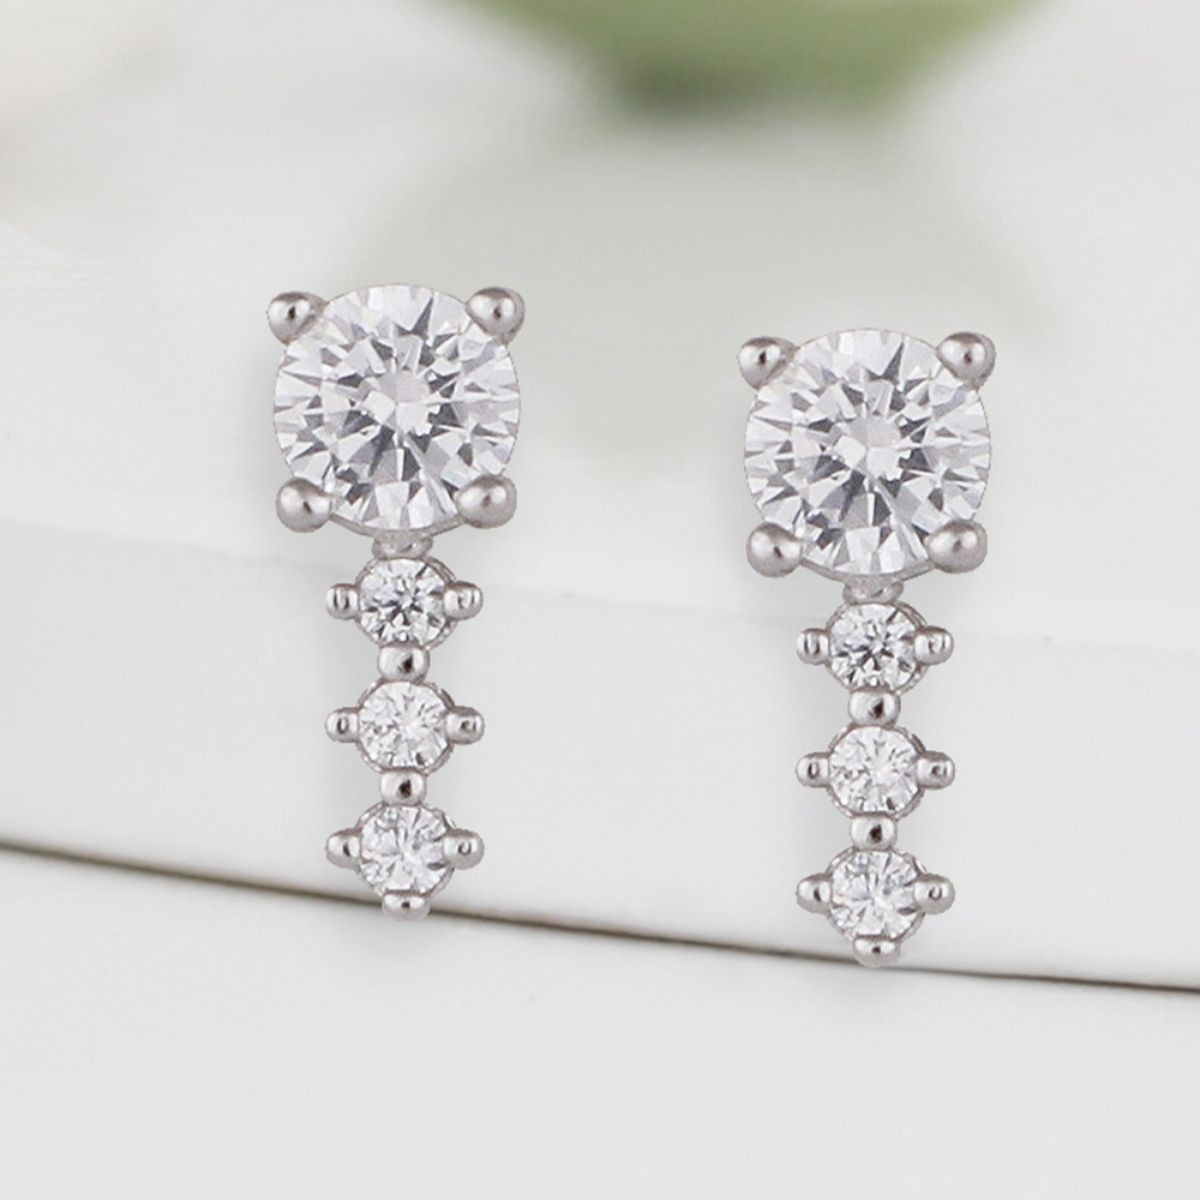 Buy Silver Earrings for Women by Giva Online  Ajiocom